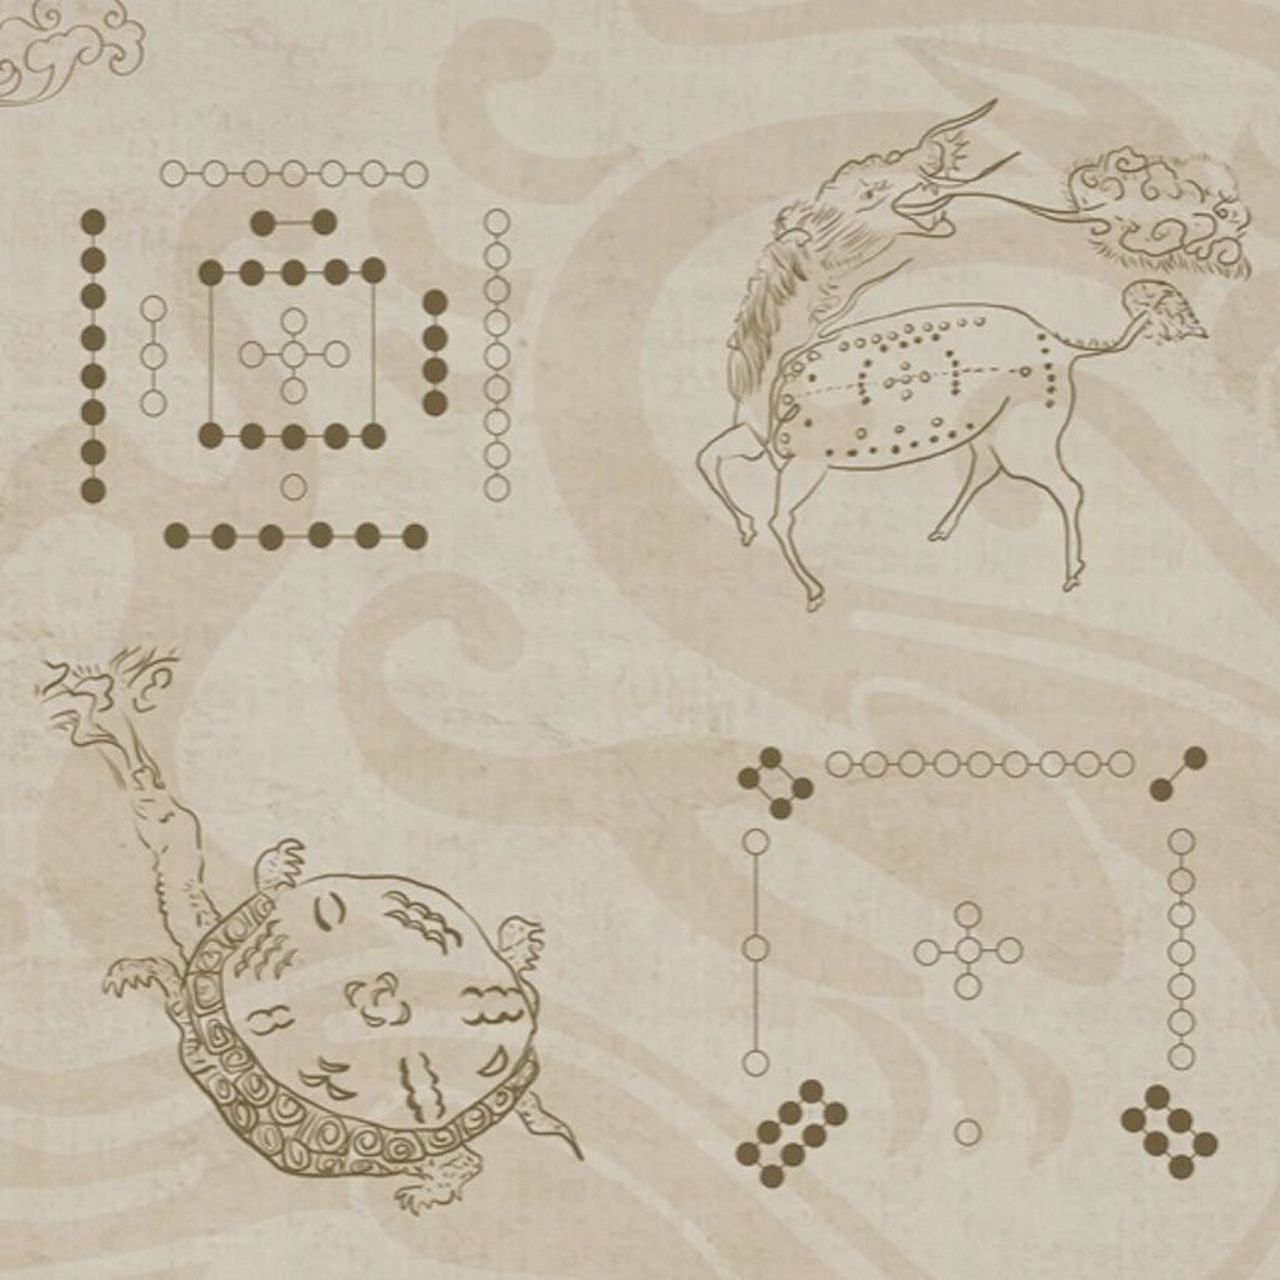 河图洛书 据说在远古伏羲时代,有一神奇的龙马背负着一张神秘的图